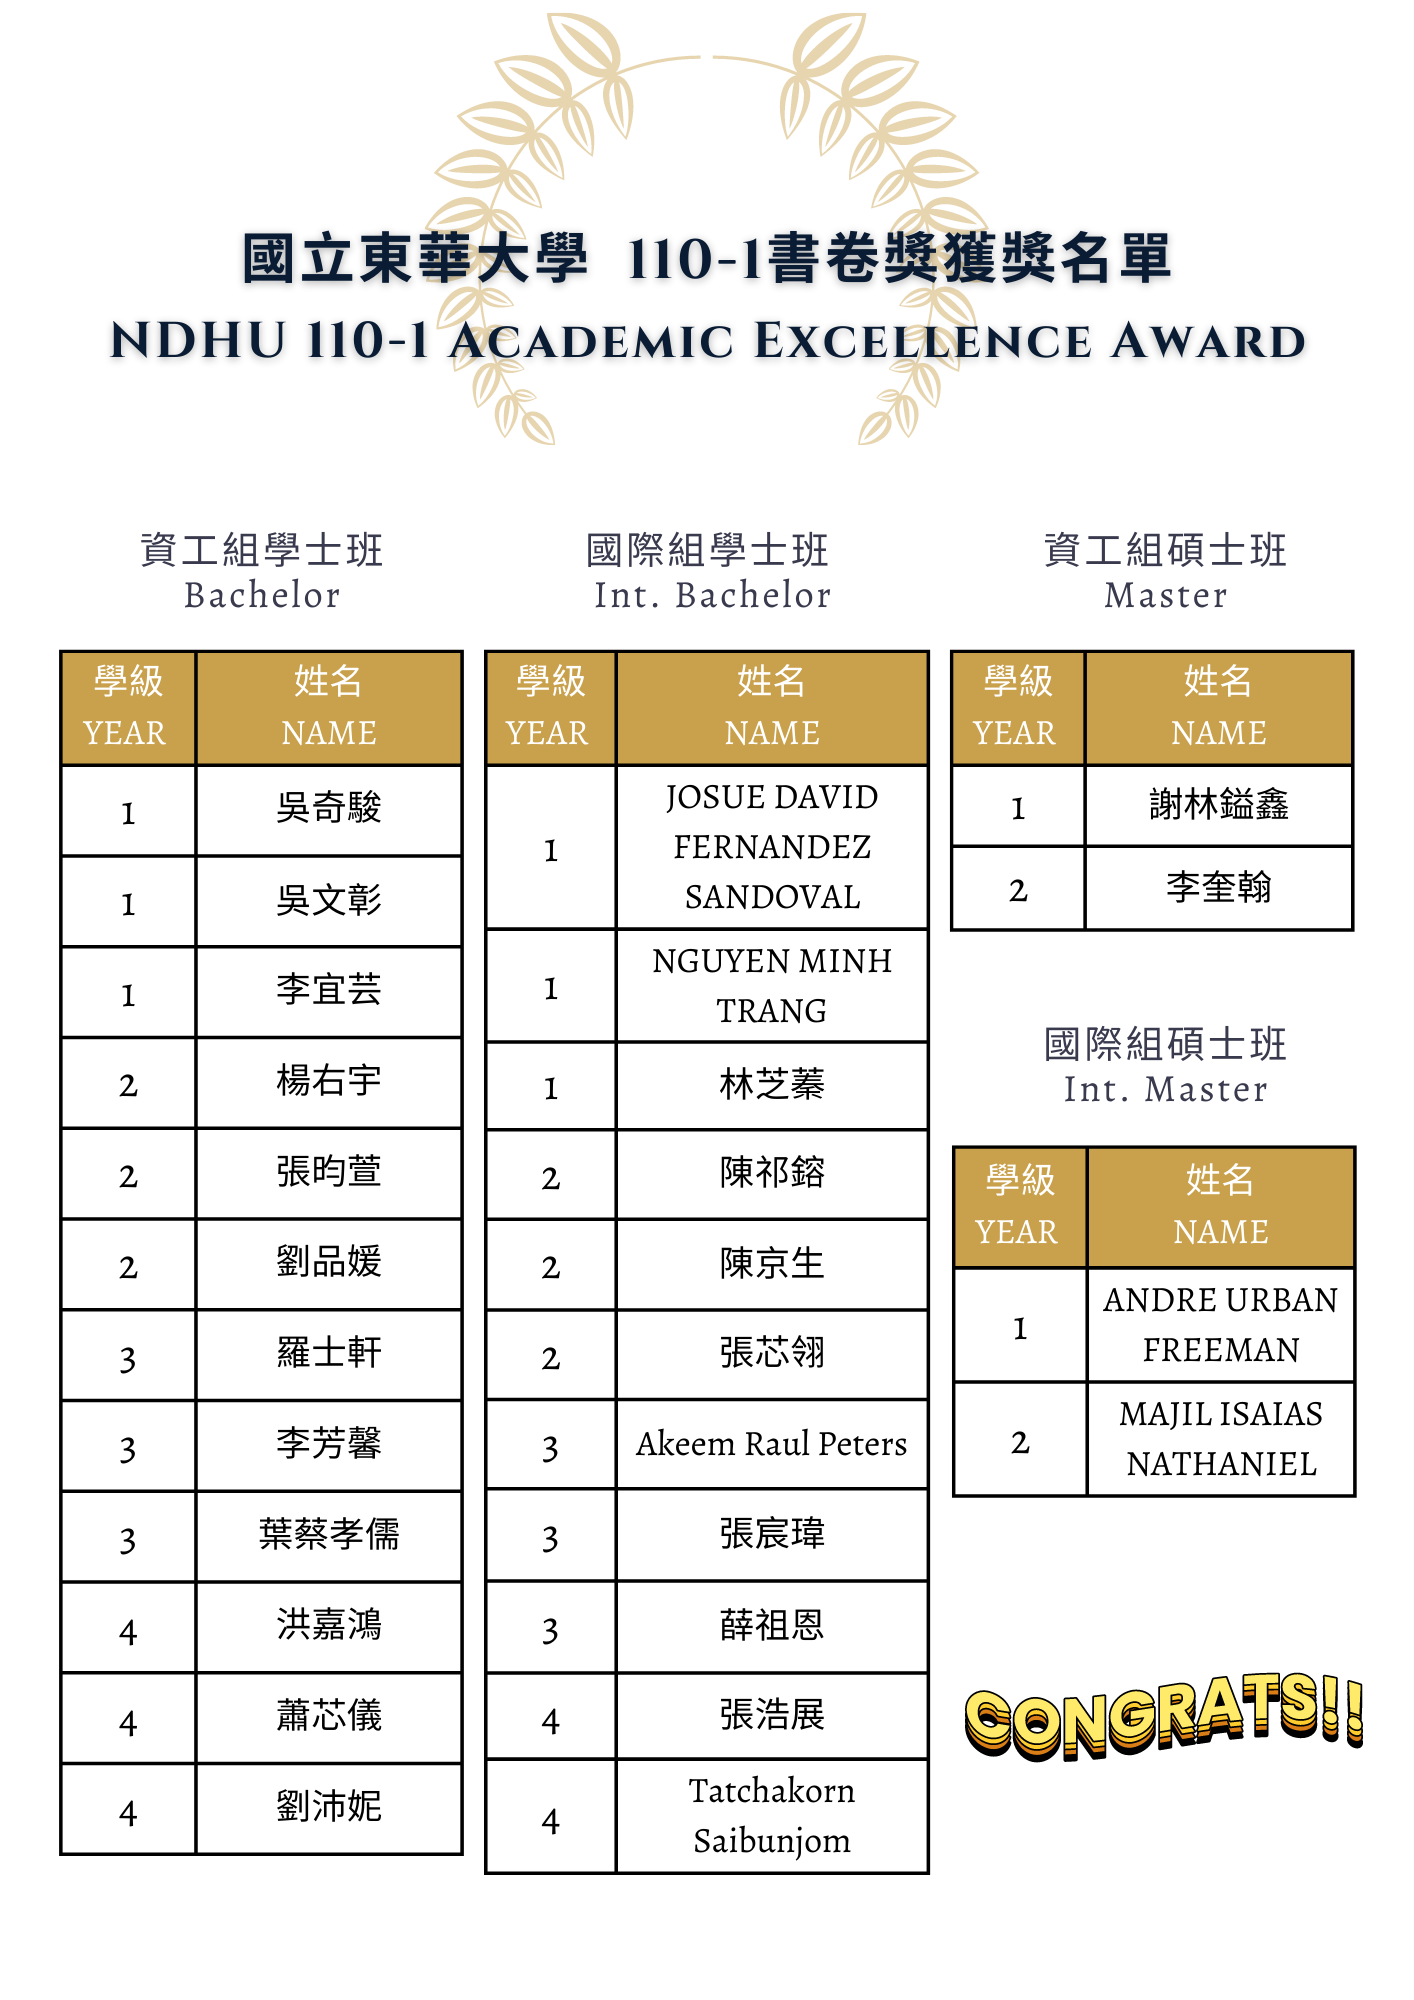 國立東華大學 110-1書卷獎獲獎名單 (2)